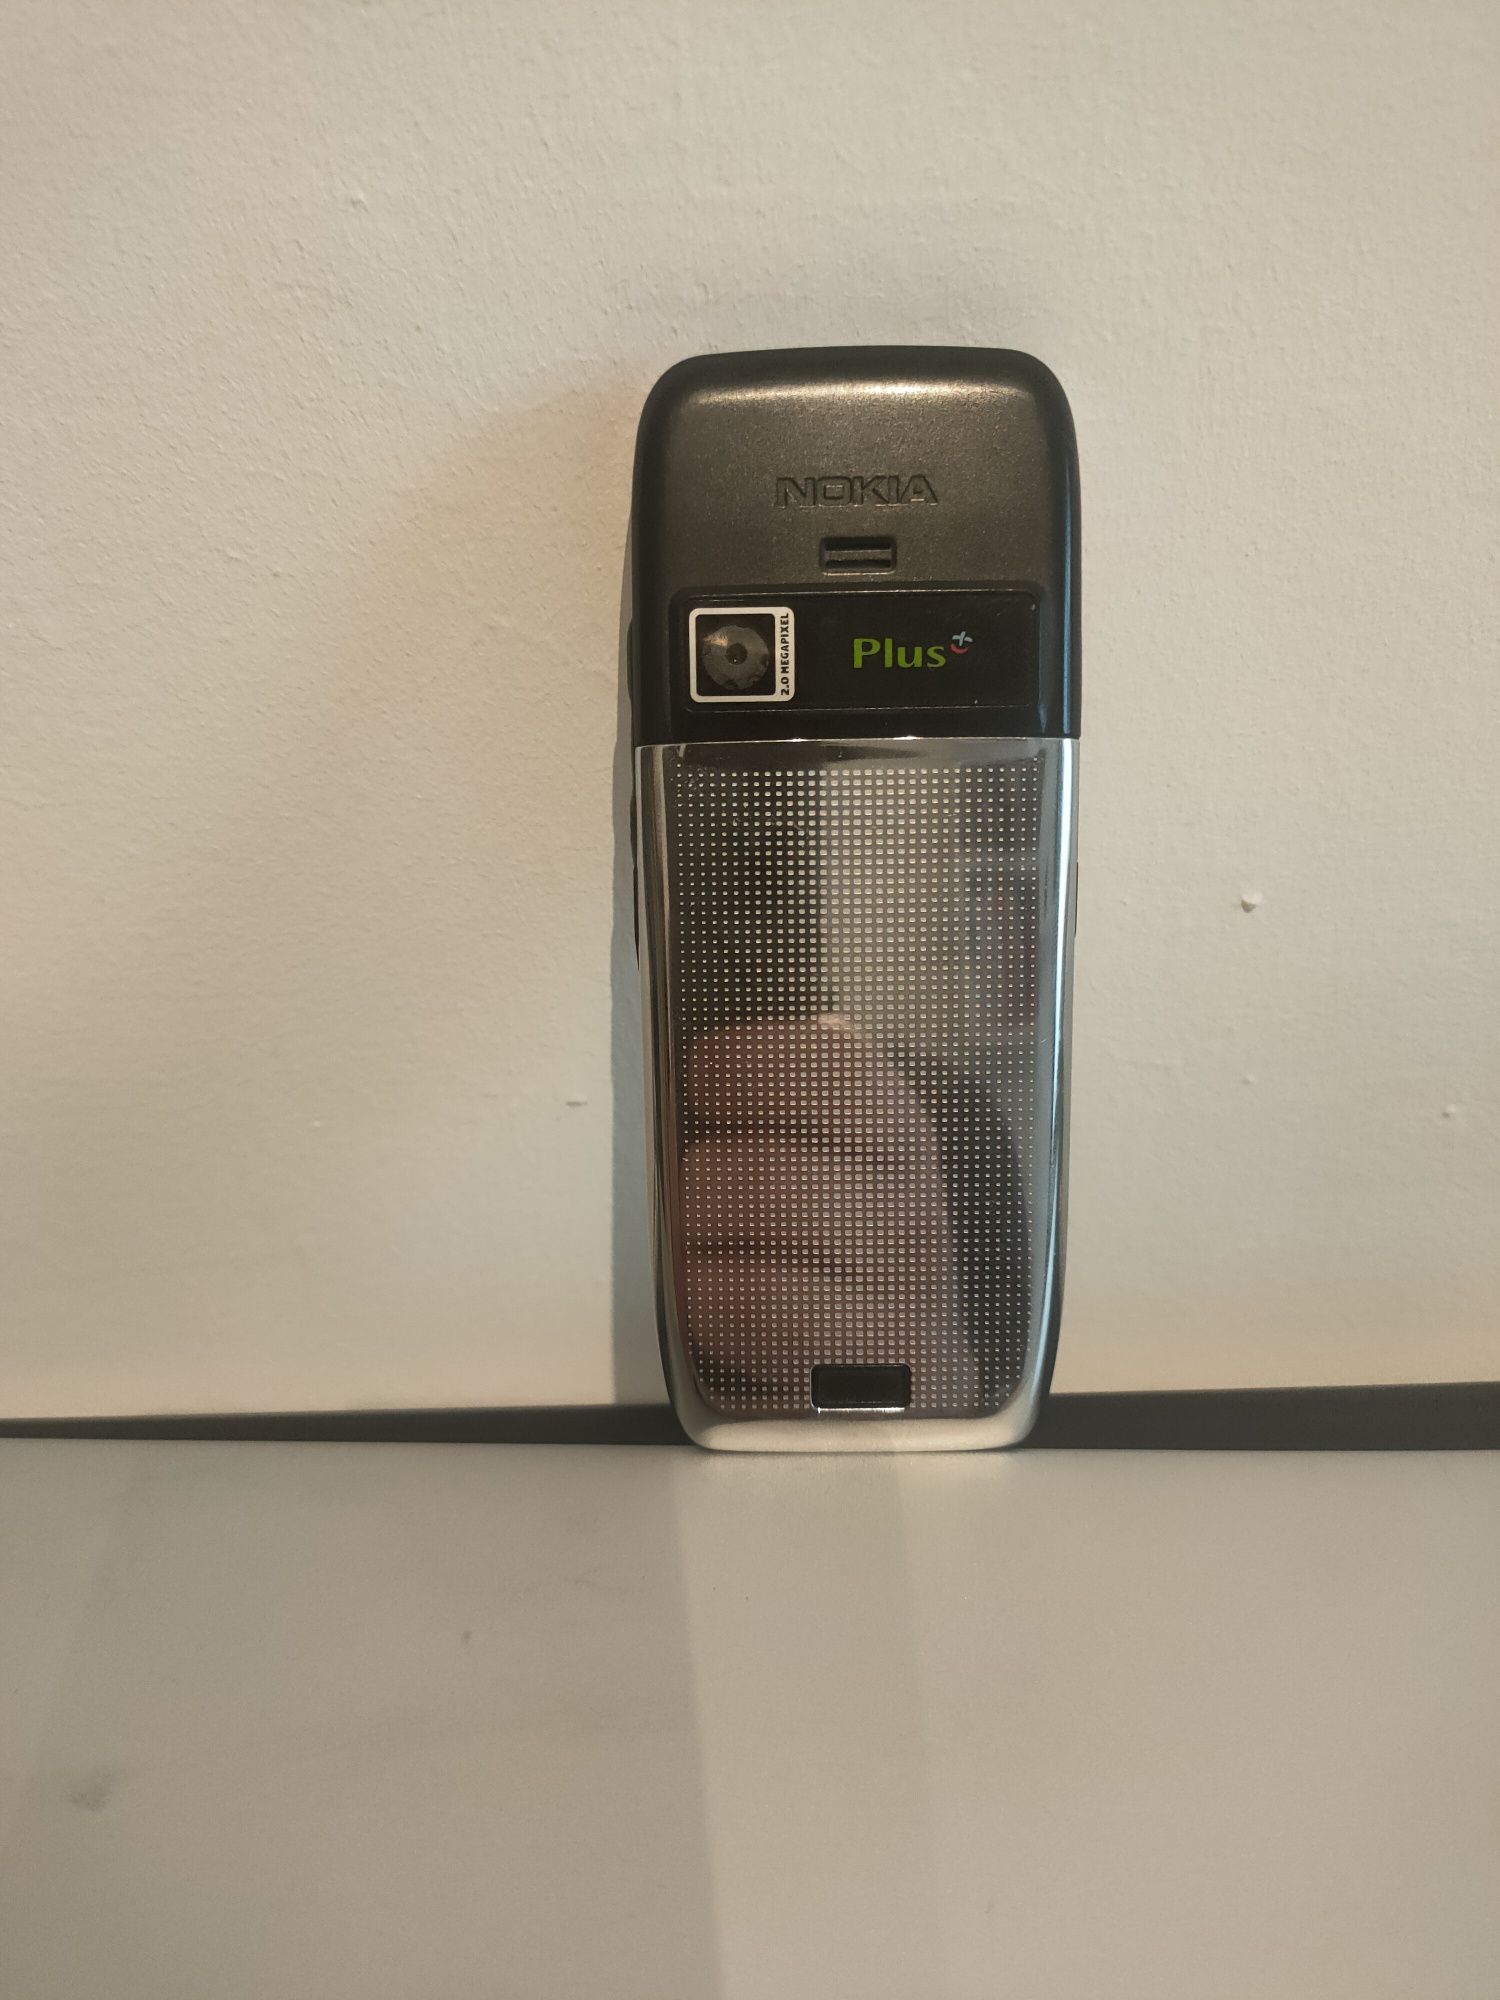 Telefon komórkowy Nokia E51